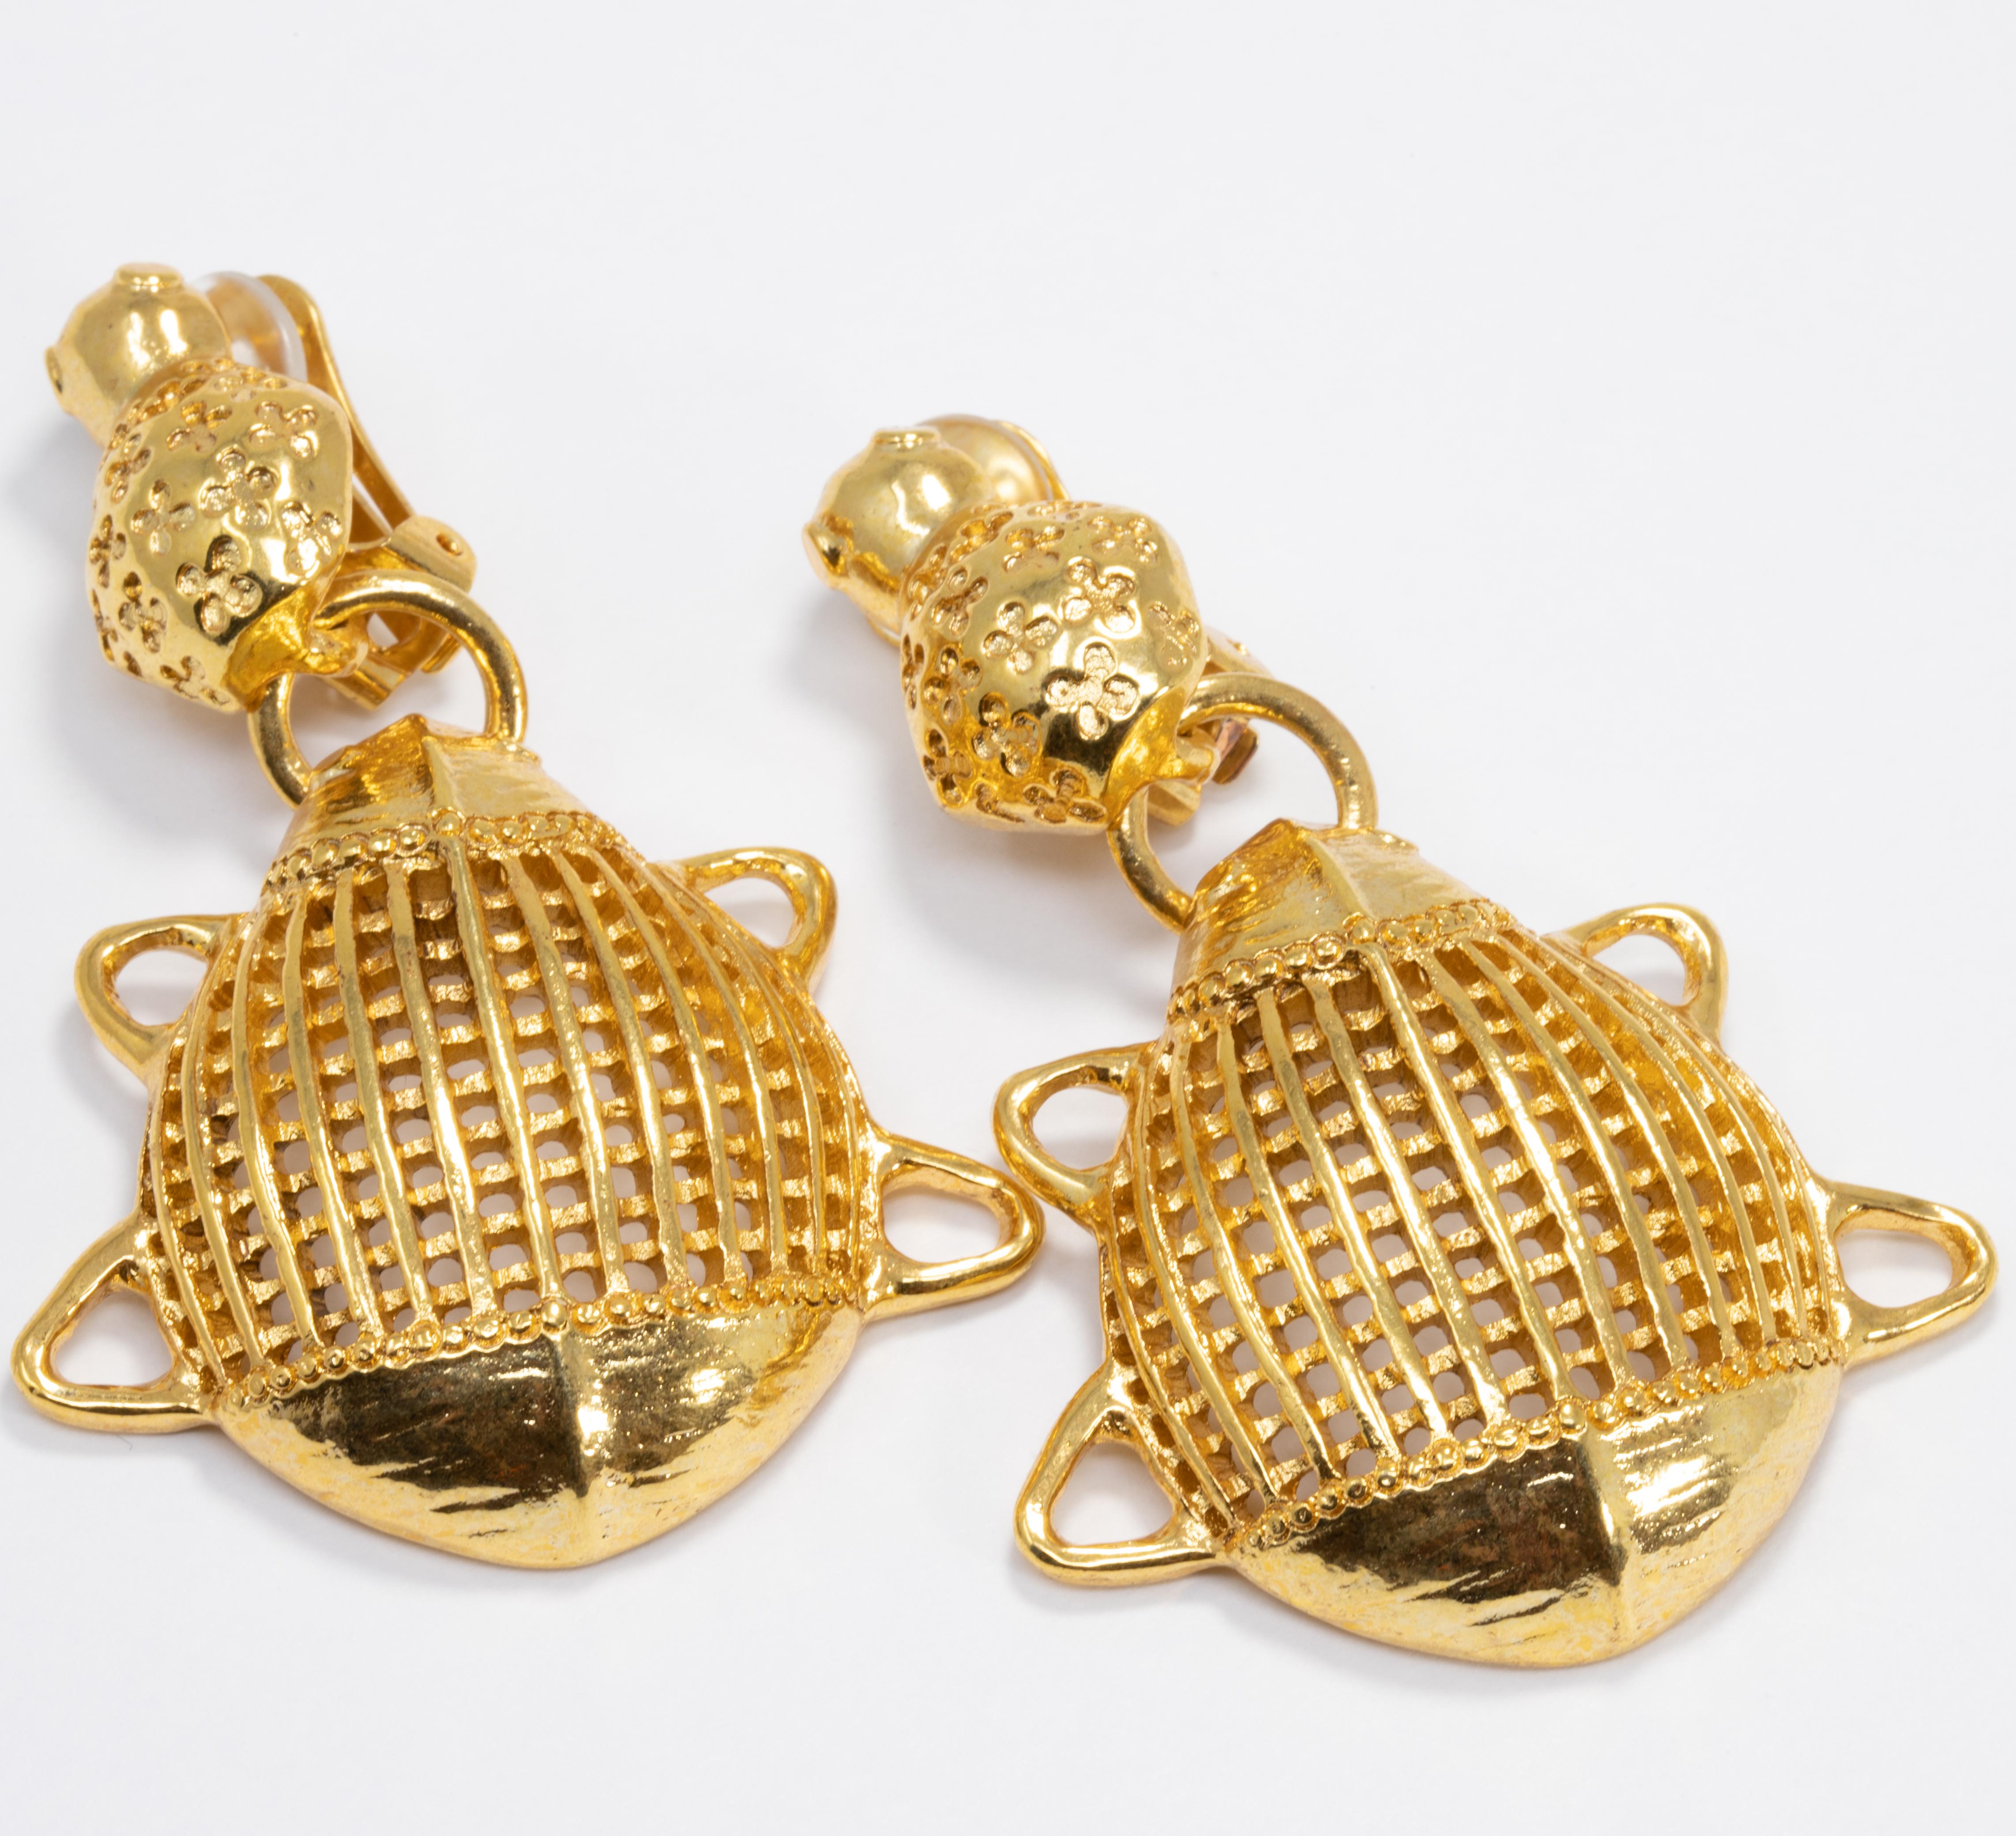 De luxueuses boucles d'oreilles à clip dans le style caractéristique d'Oscar de la Renta. Une paire d'élégants scarabées stylisés plaqués or !

Poinçons : Oscar de la Renta, Made in USA